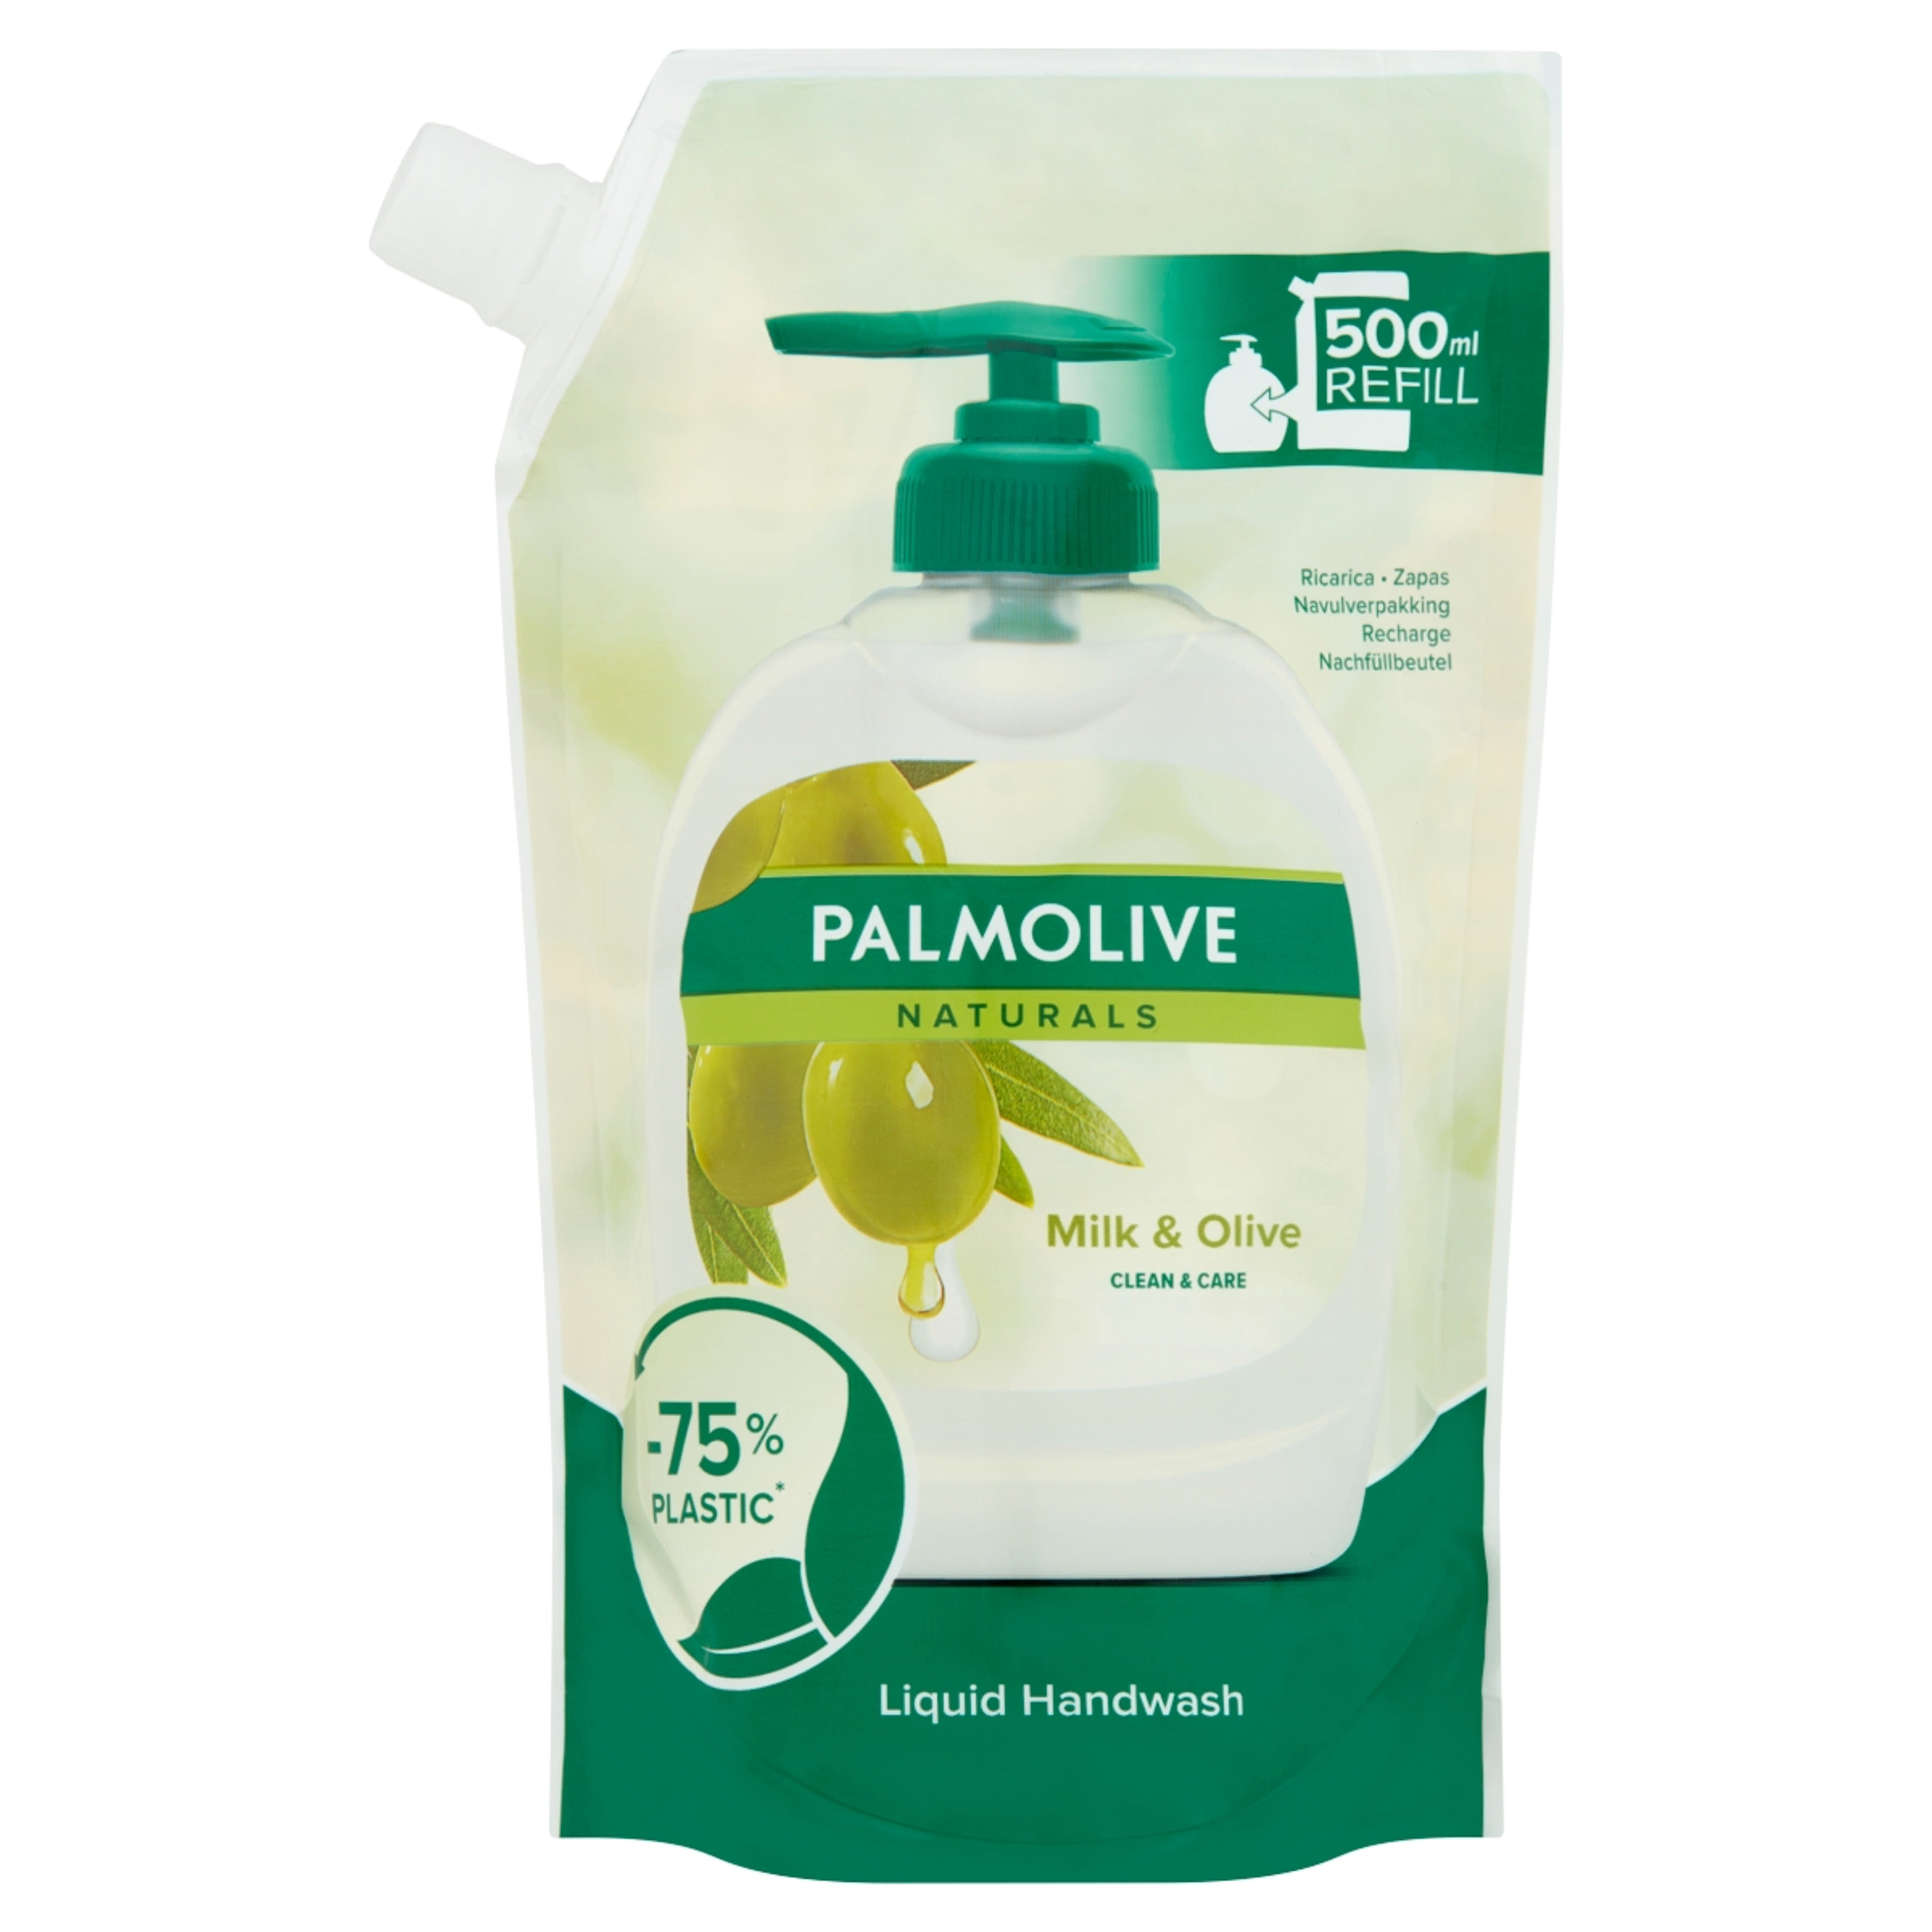 Palmolive Naturals Milk & Olive folyékony szappan utántöltő - 500 ml-1